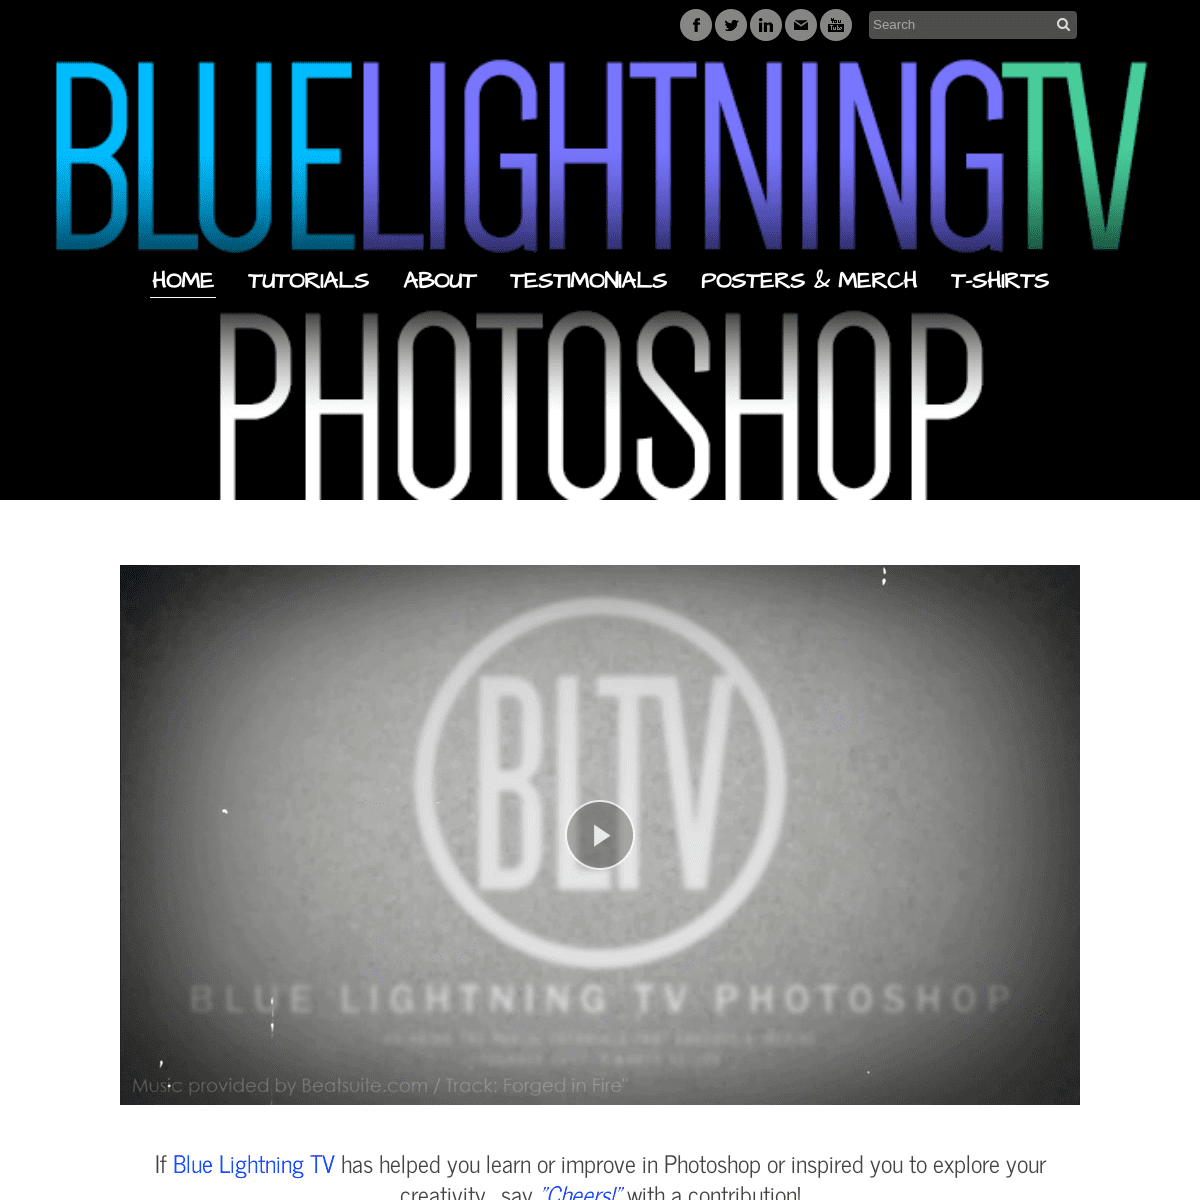 blue lightning tv photoshop download